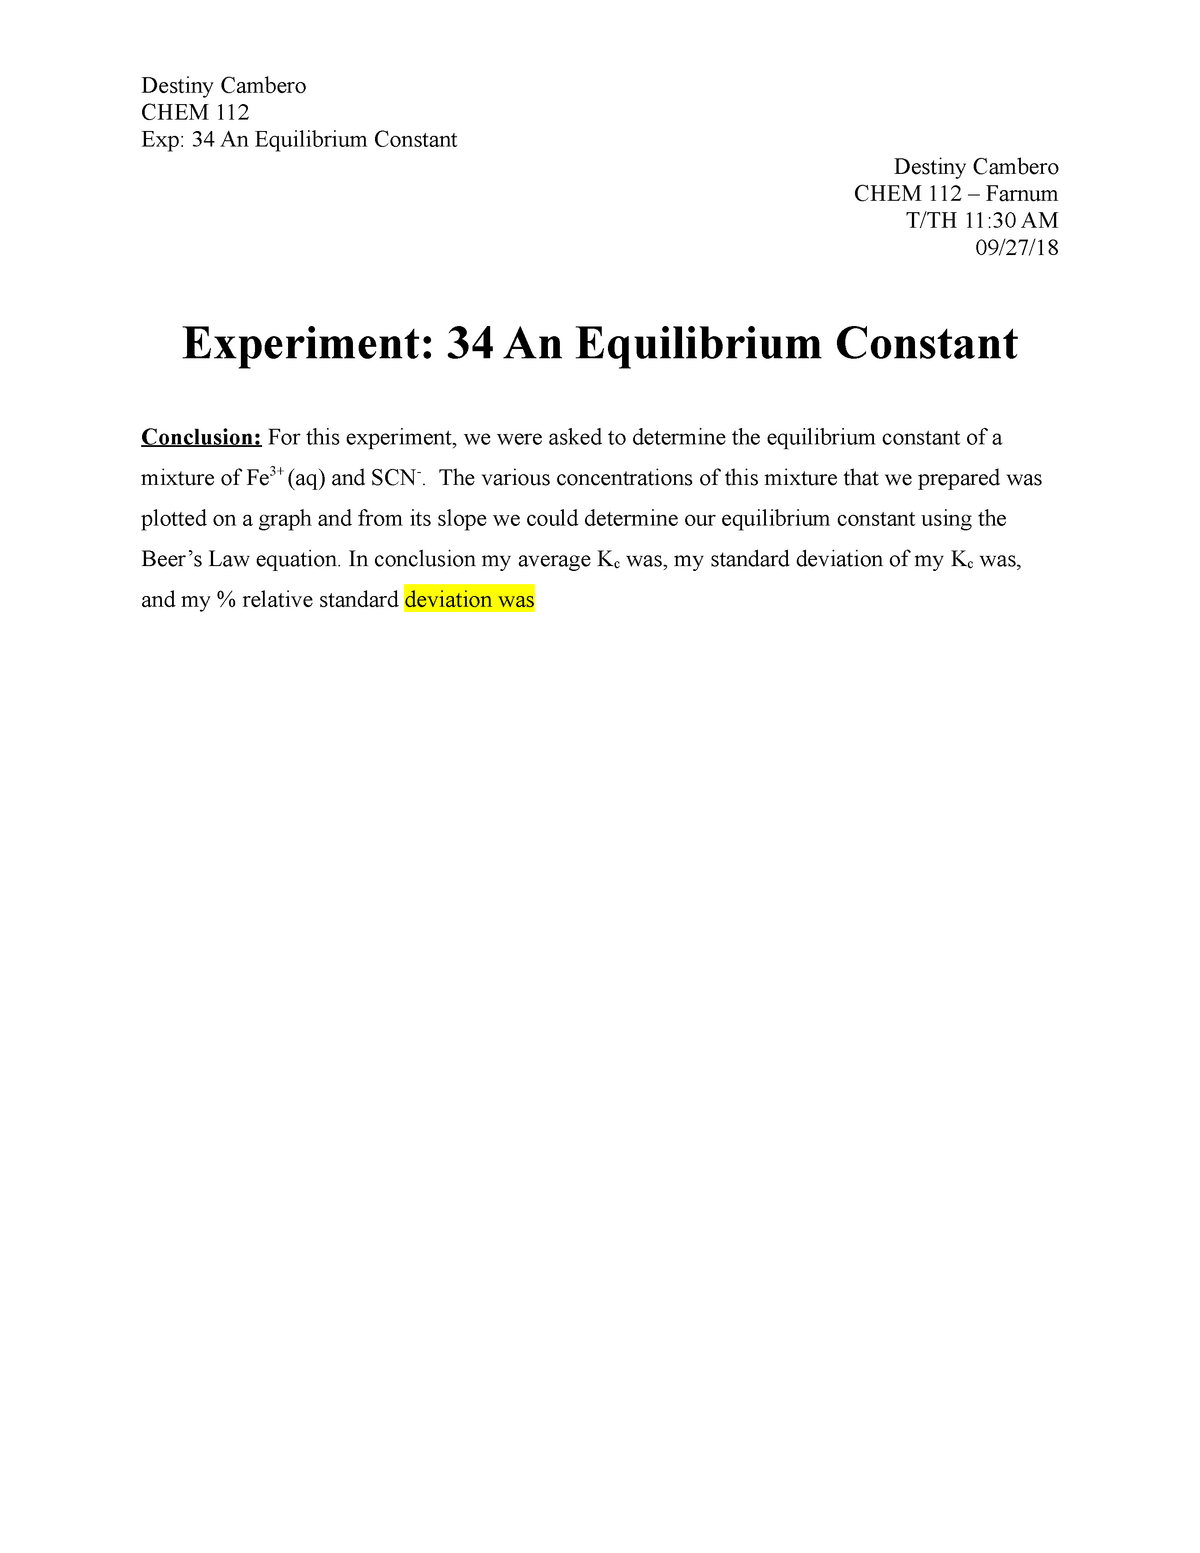 practical-experiment-34-report-an-equilibrium-constant-destiny